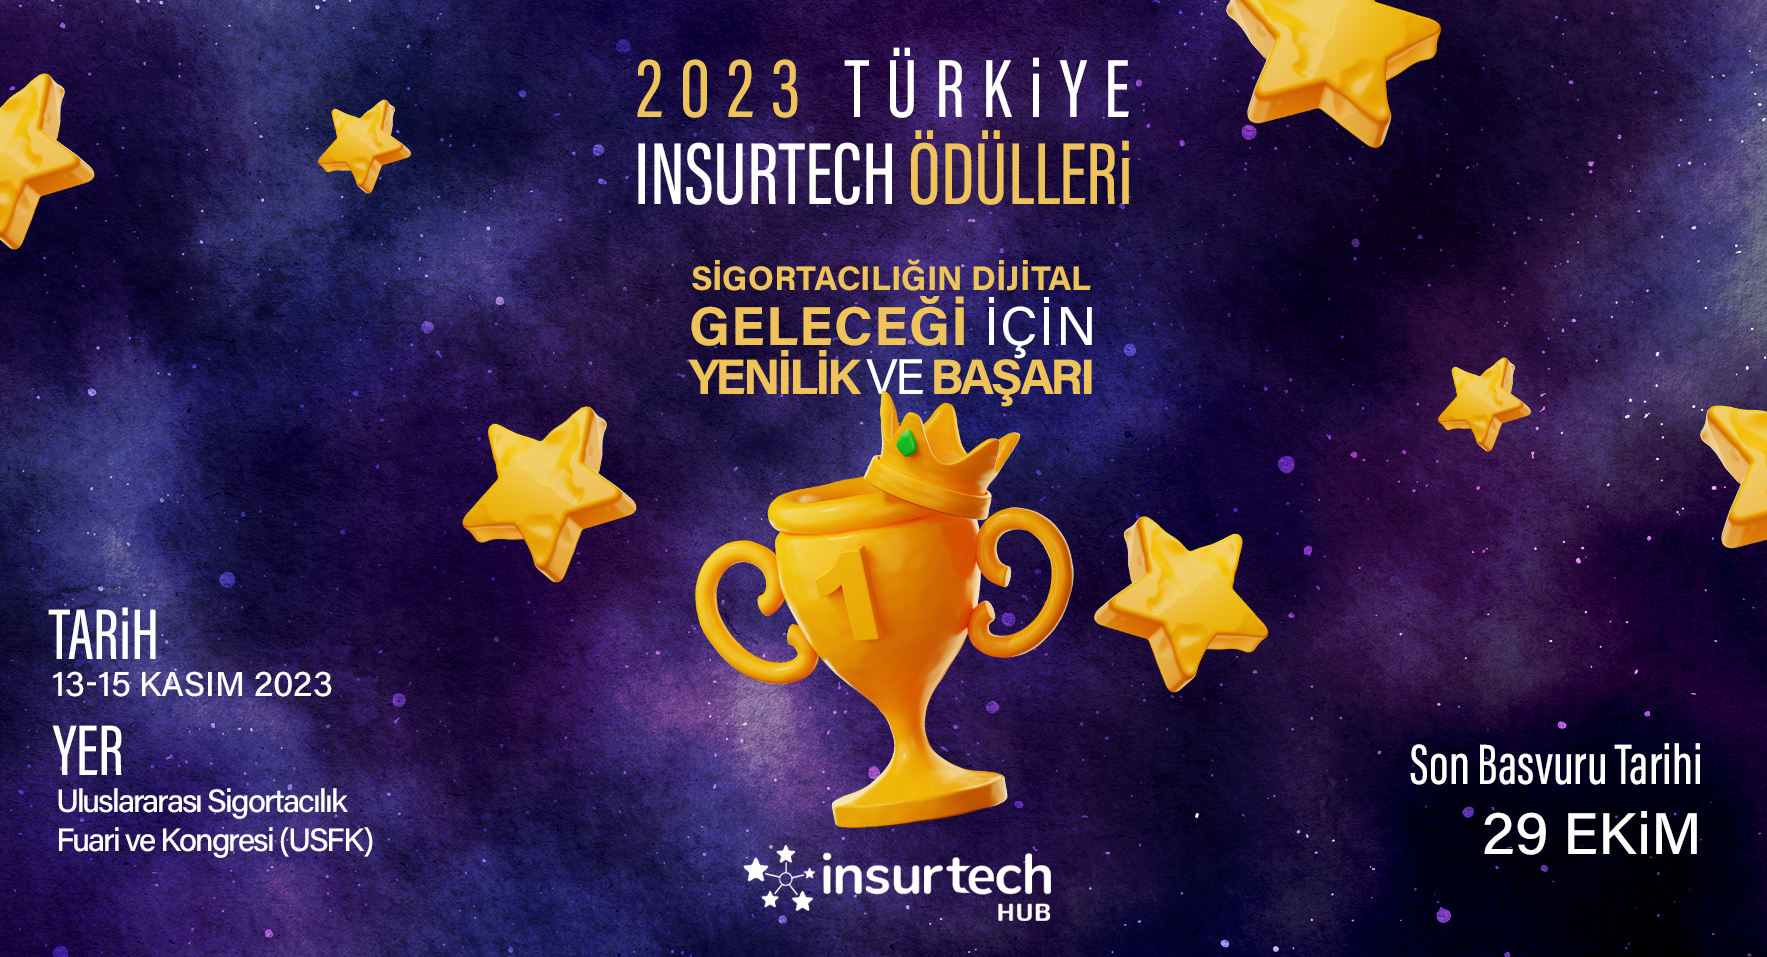 2023 Türkiye Insurtech Ödülleri